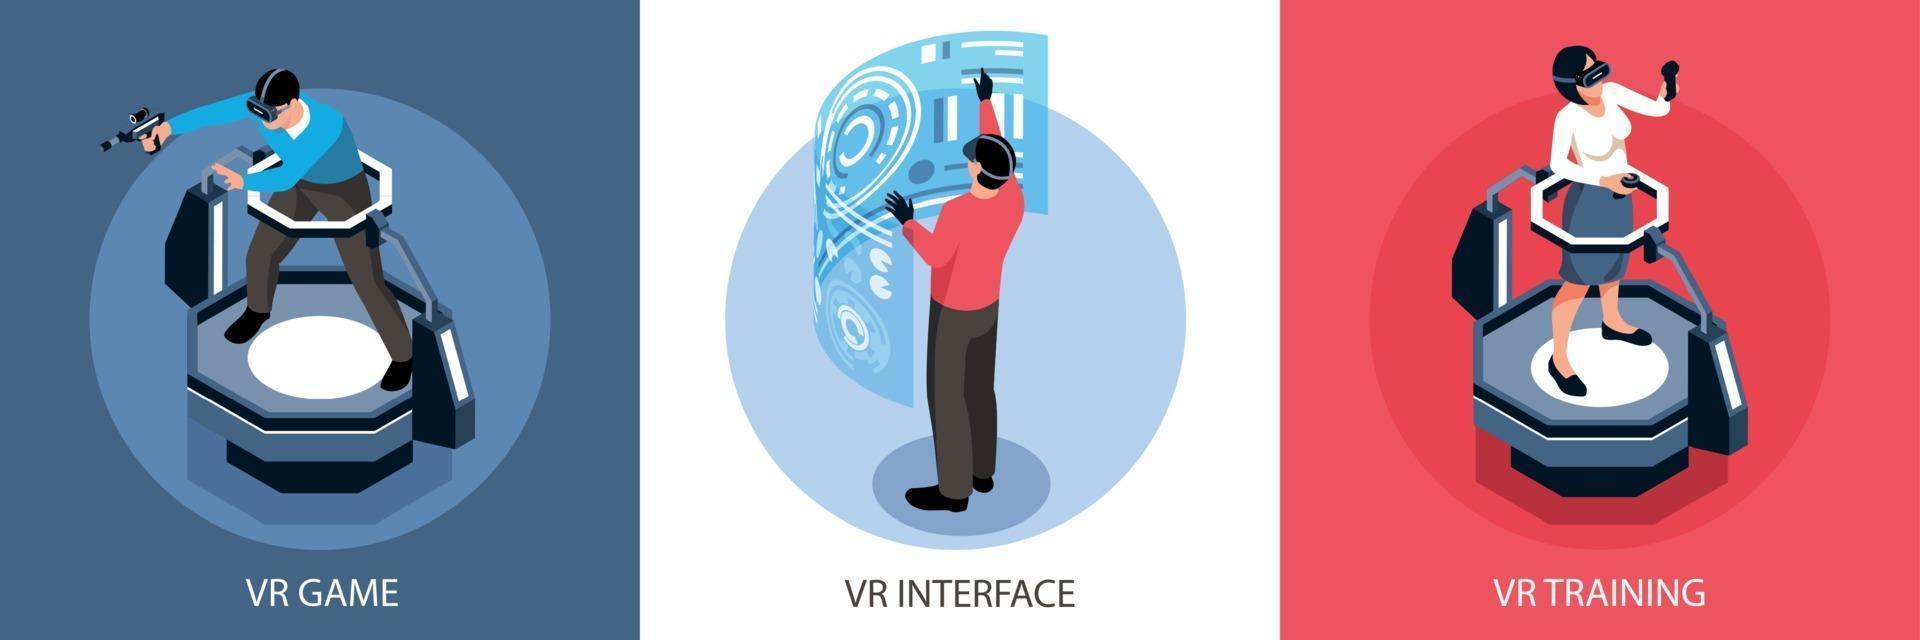 concepto de diseño isométrico de realidad virtual vector